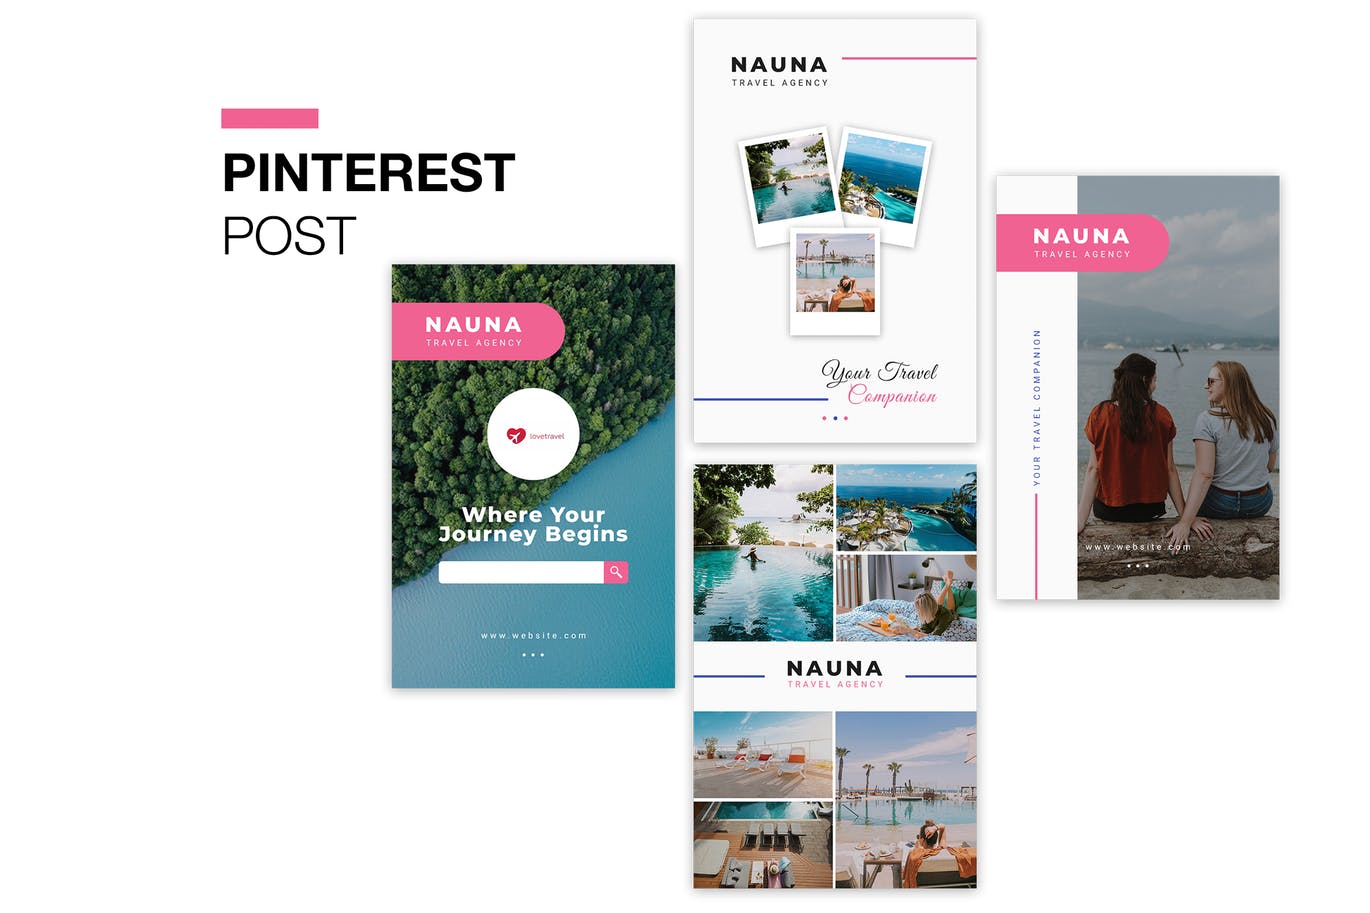 旅游代理商Pinterest社交推广设计素材 Nauna Travel Agency Pinterest Post插图